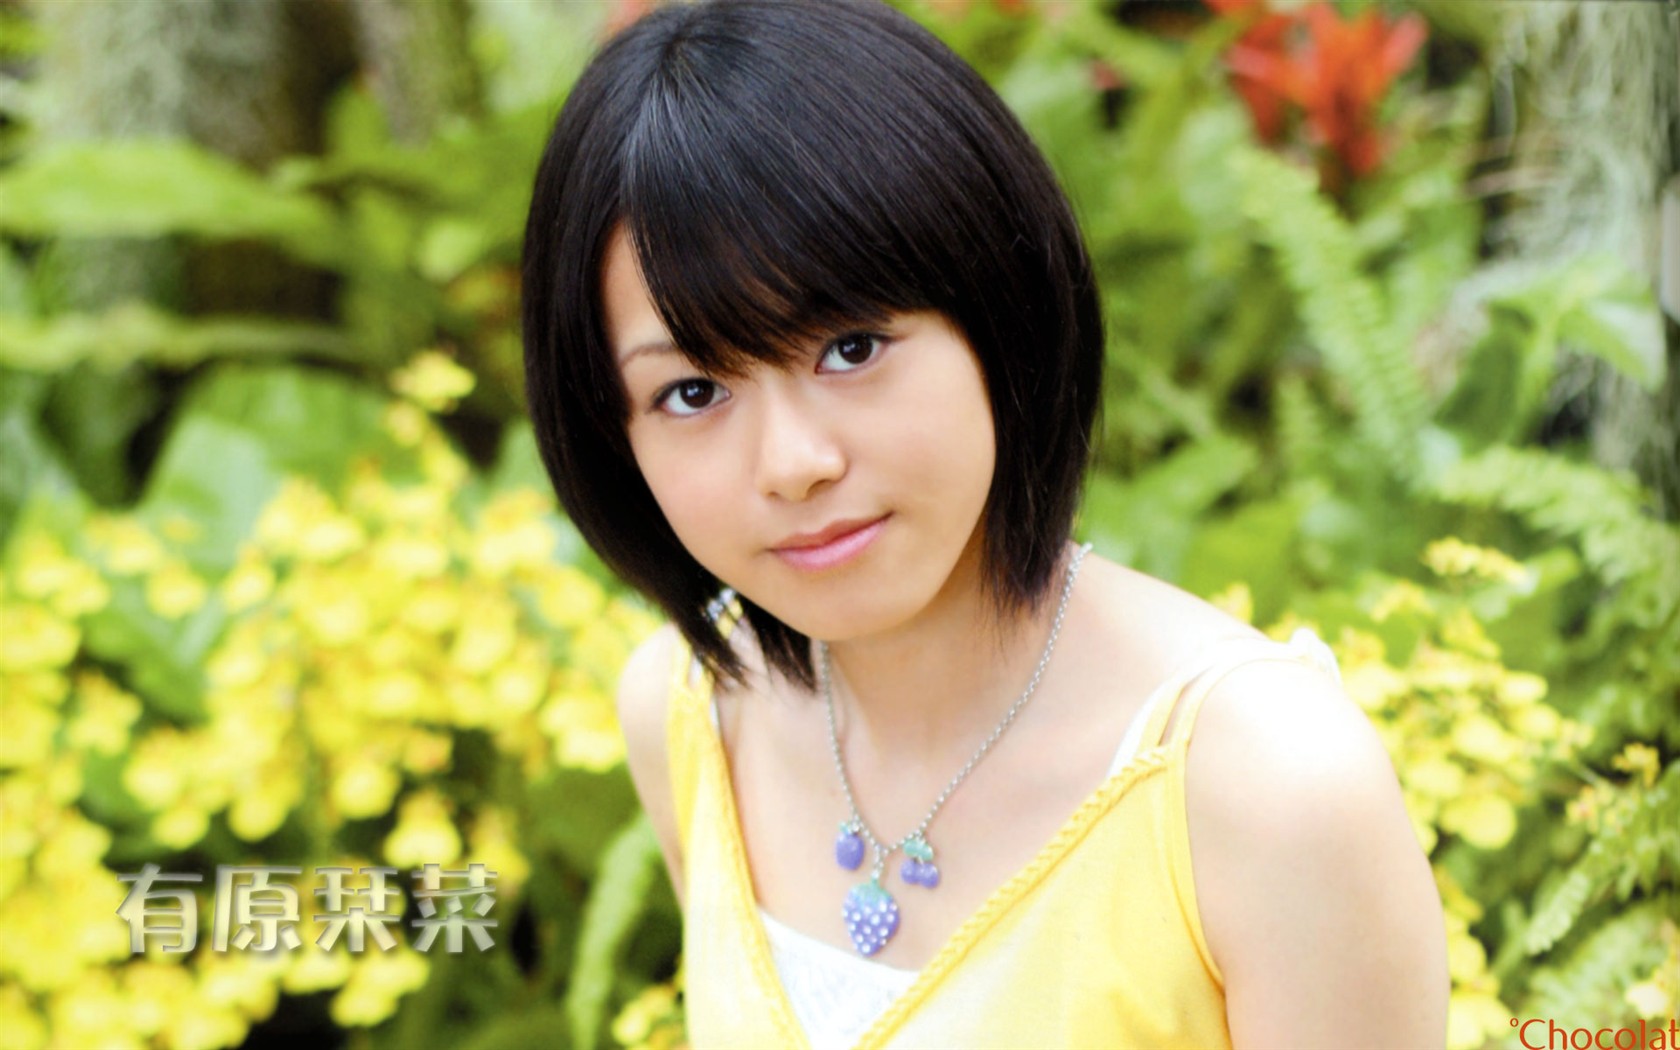 Cute belleza japonesa portafolio de fotos #9 - 1680x1050